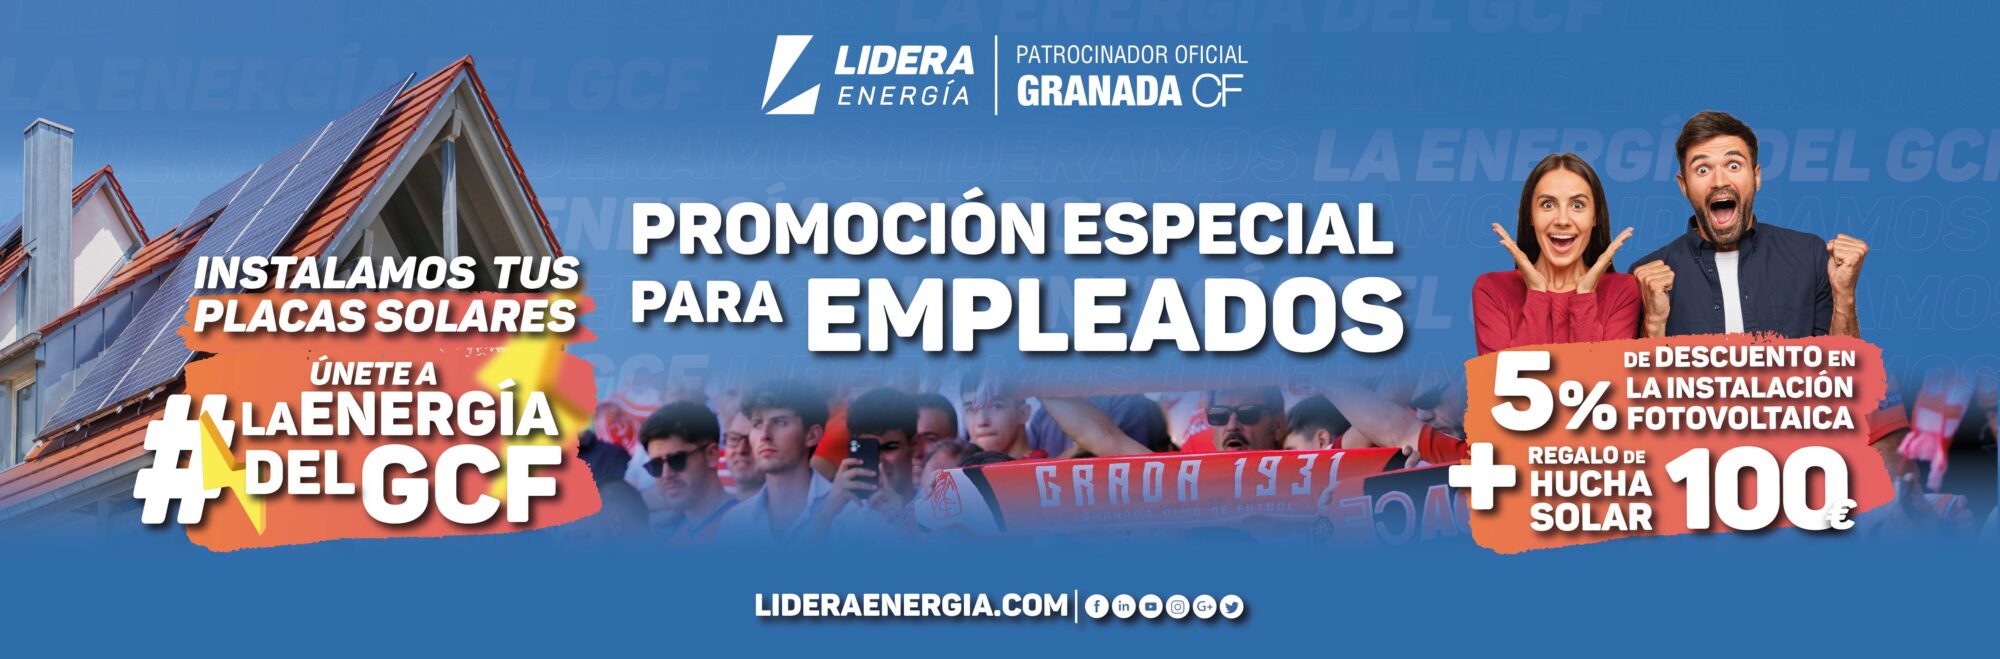 Promoción Empleados Granada Cf yLidera Energia